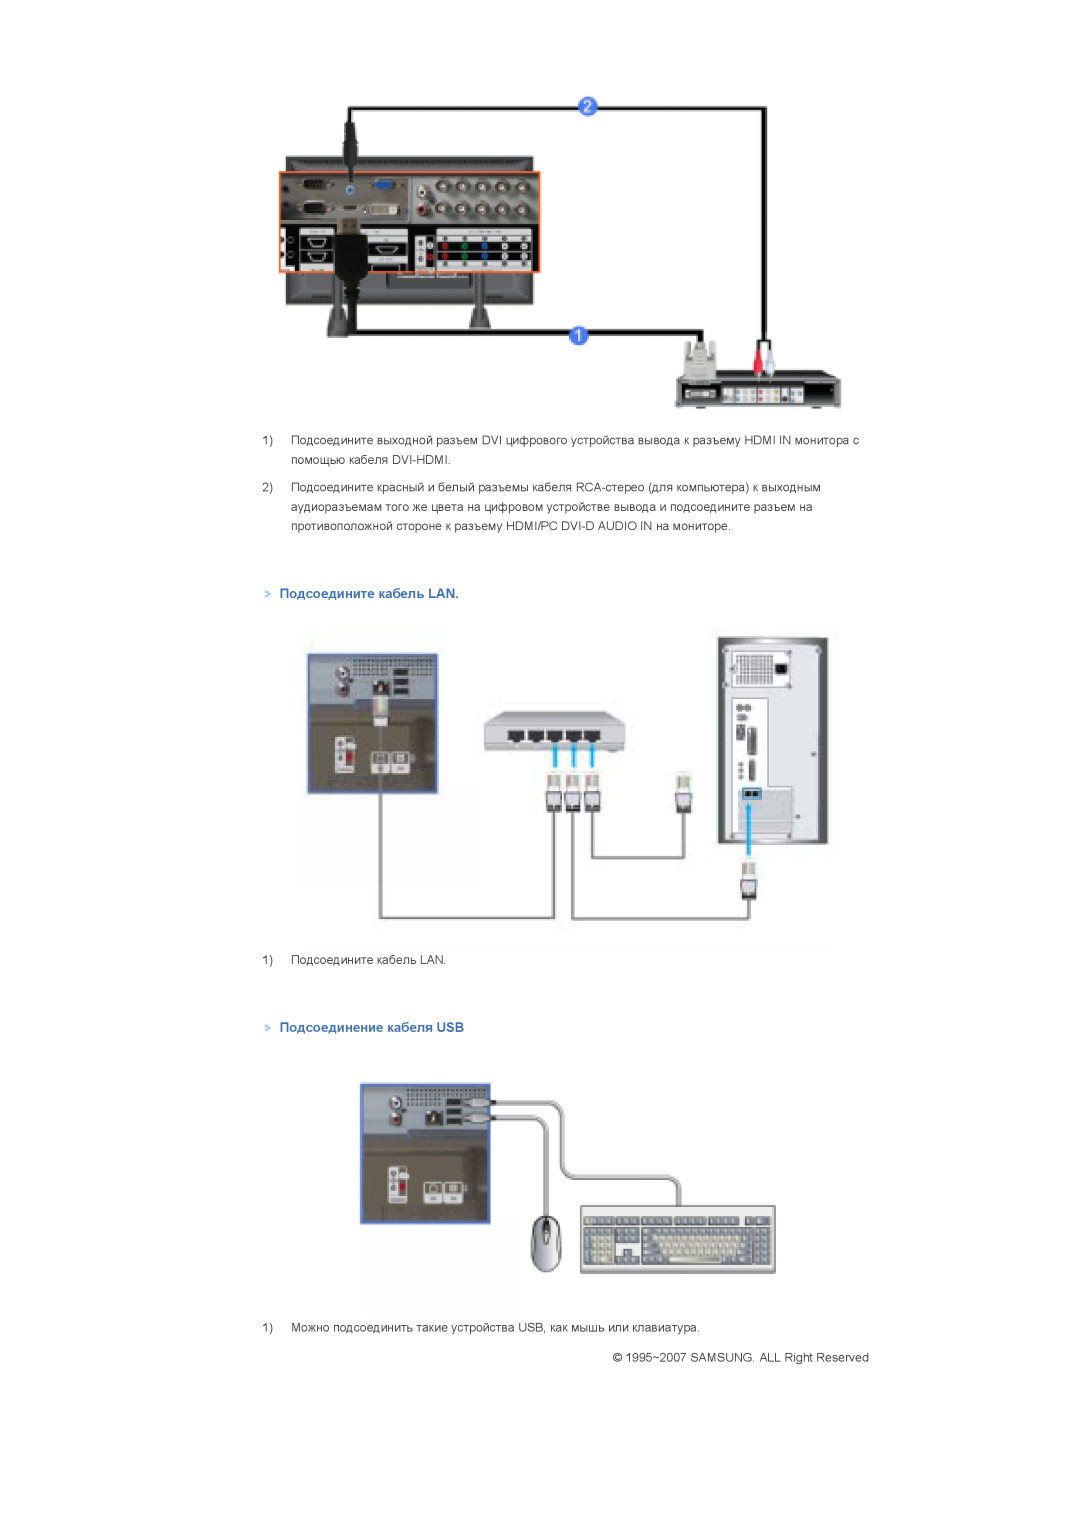 Samsung LS82BPTNS/EDC, LS70BPTNS/EDC, LS70BPTNB/EDC manual Подсоедините кабель LAN, Подсоединение кабеля USB 